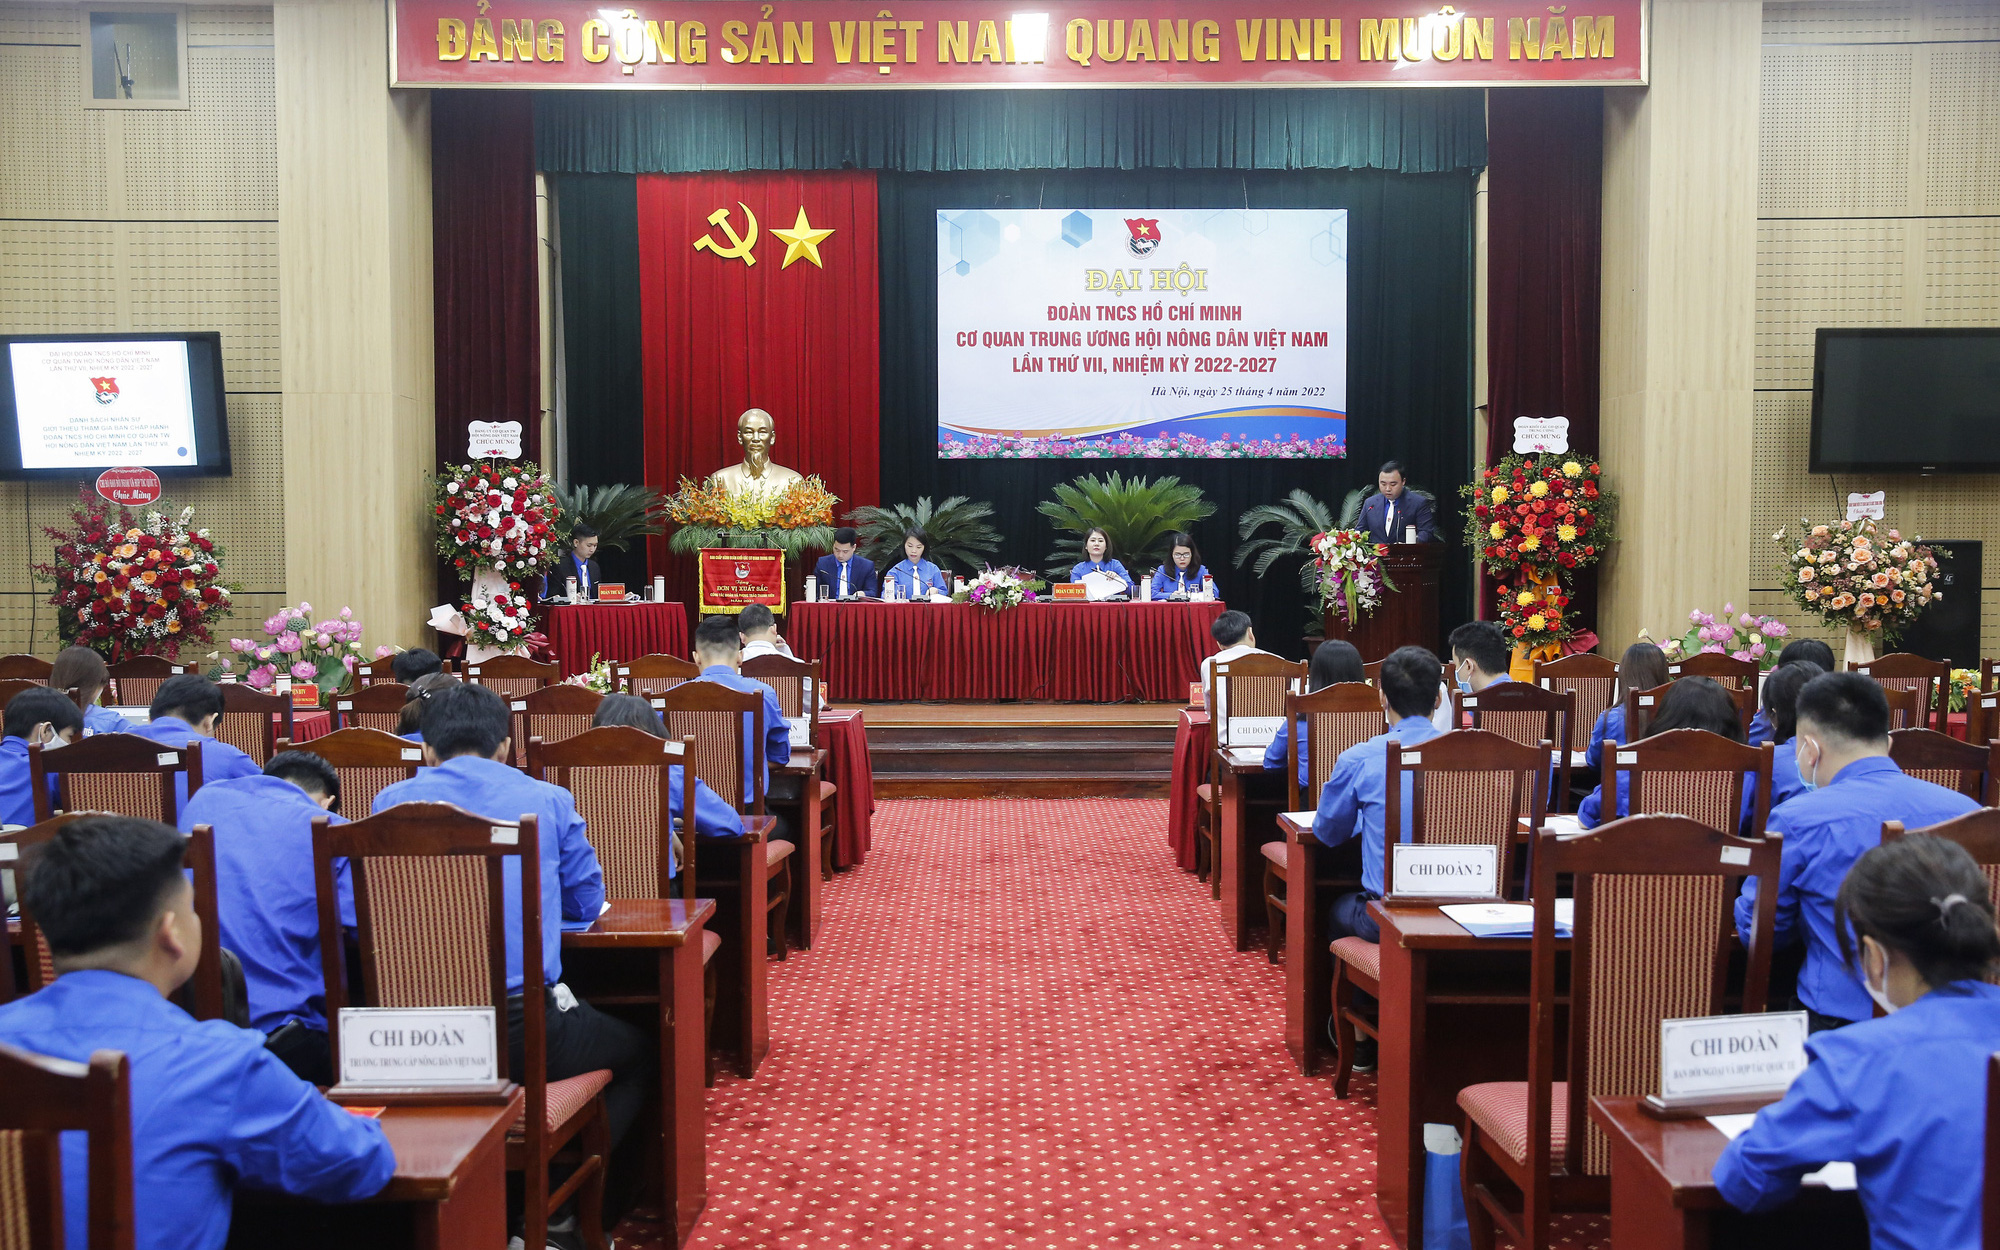 Tưng bừng diễn ra Đại hội Đoàn TNCS Hồ Chí Minh Cơ quan TƯ Hội Nông dân Việt Nam lần thứ VII